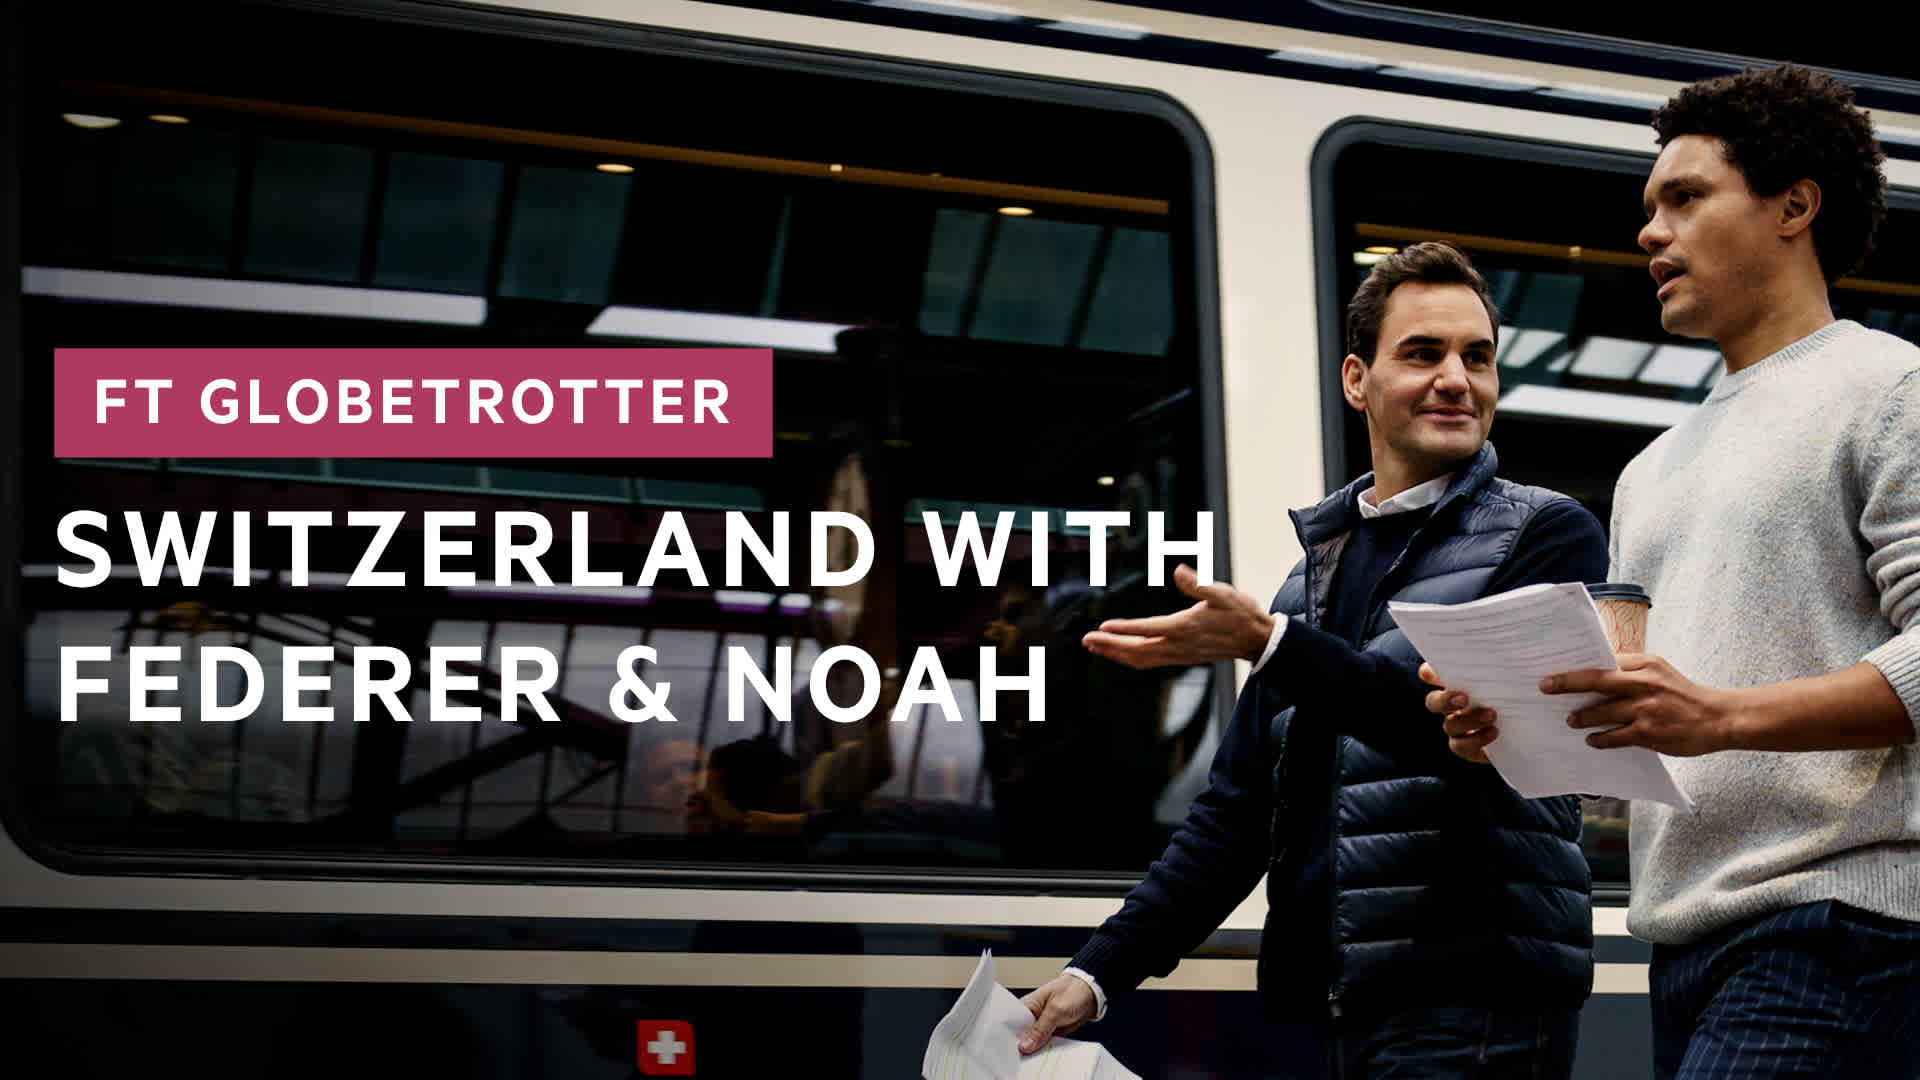 Roger Federer and Trevor Noah on why you should visit Switzerland | FT Globetrotter